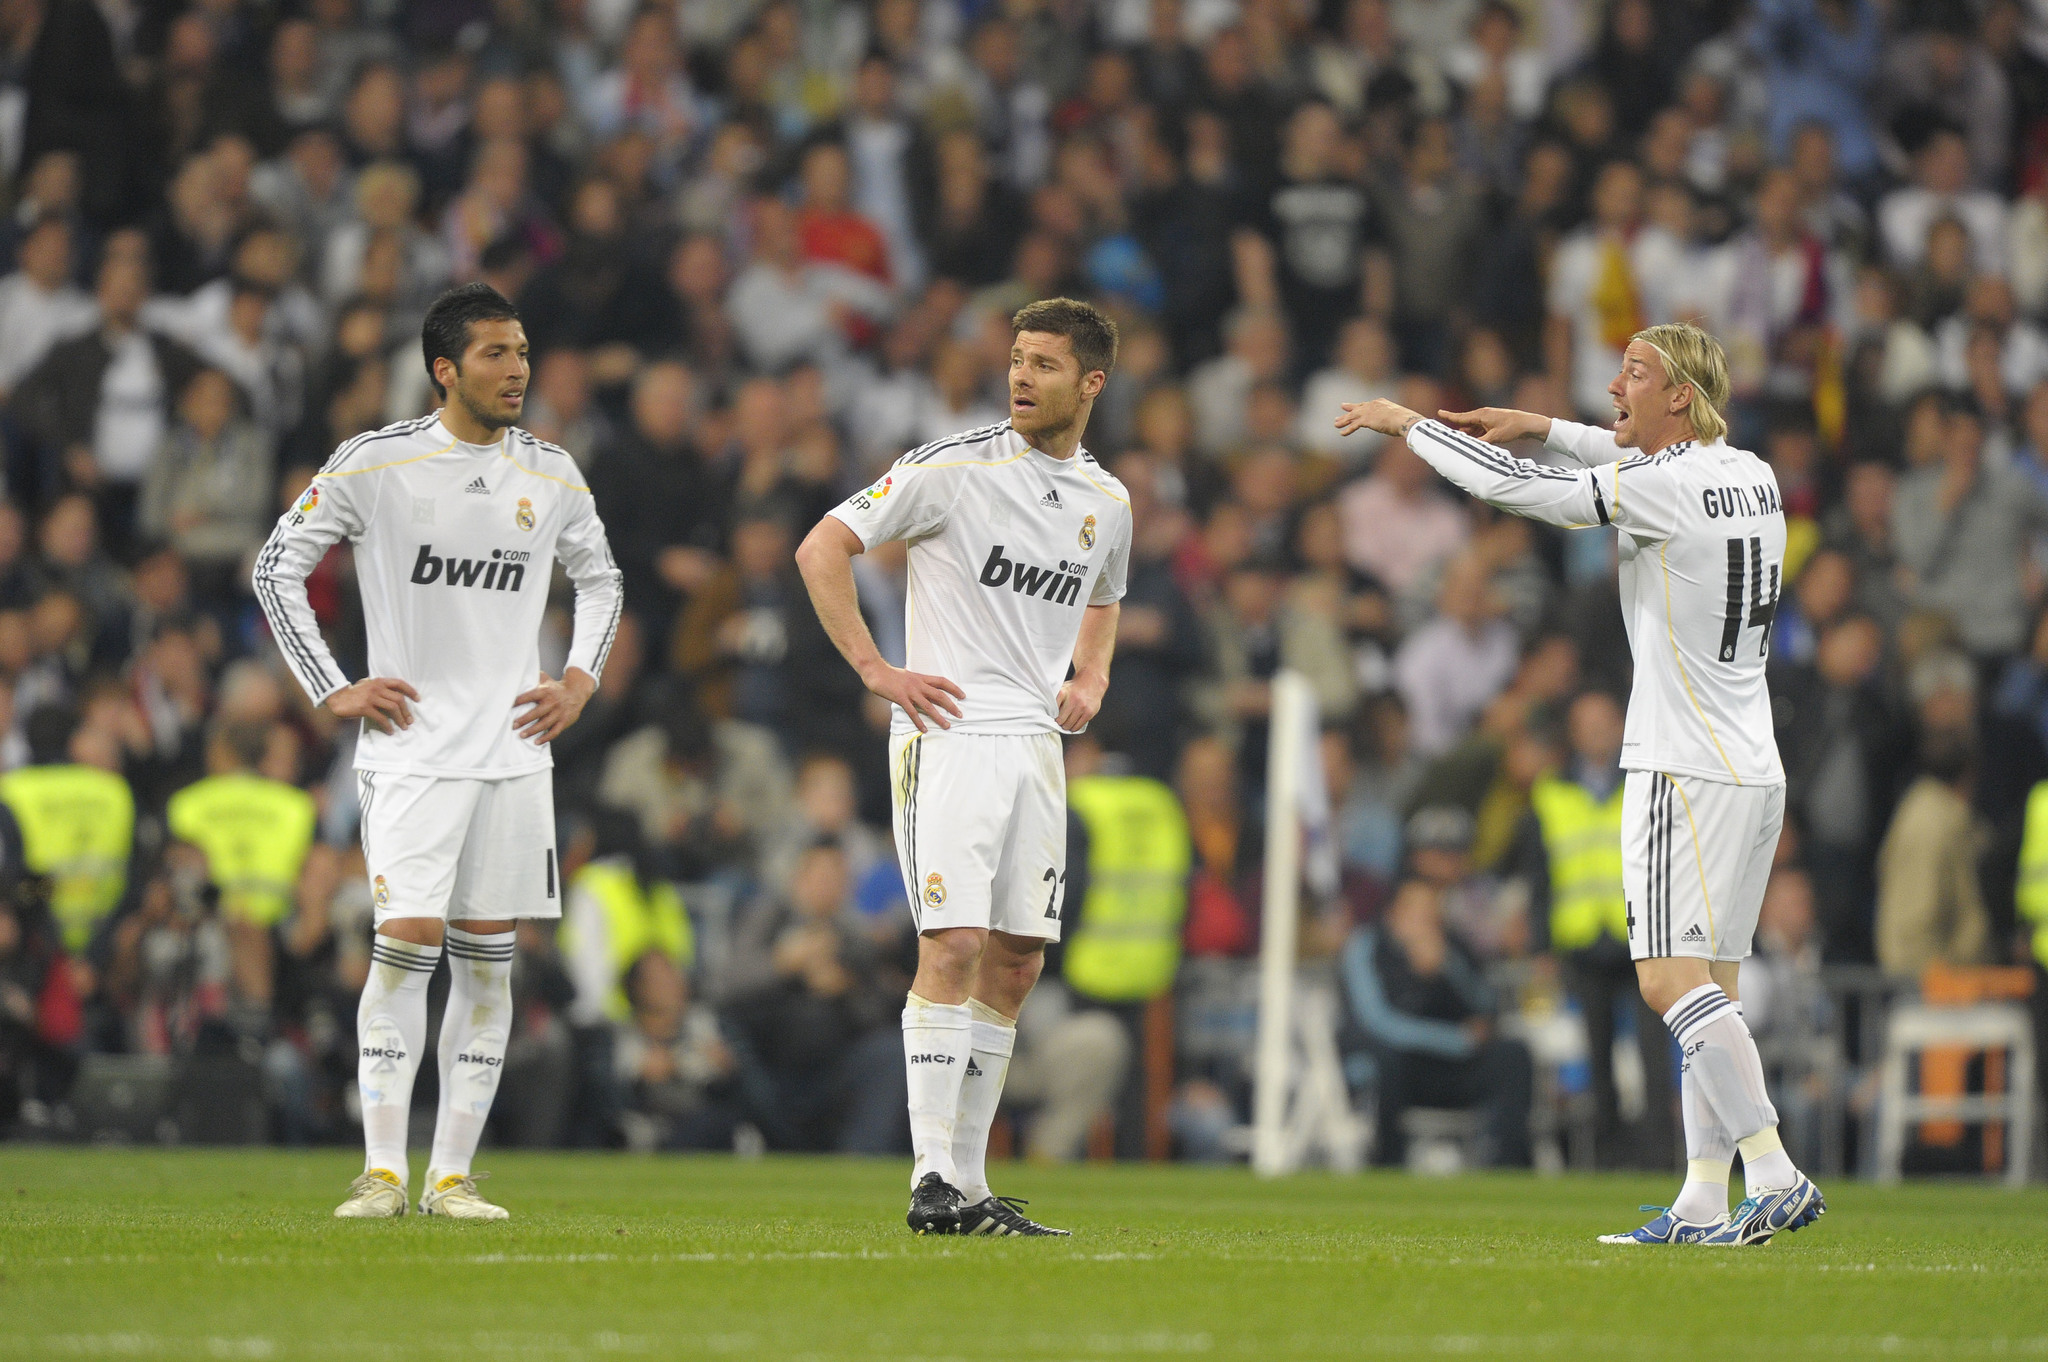 Đội hình Real Madrid khi Ronaldo ra mắt như thế nào? - Bóng Đá